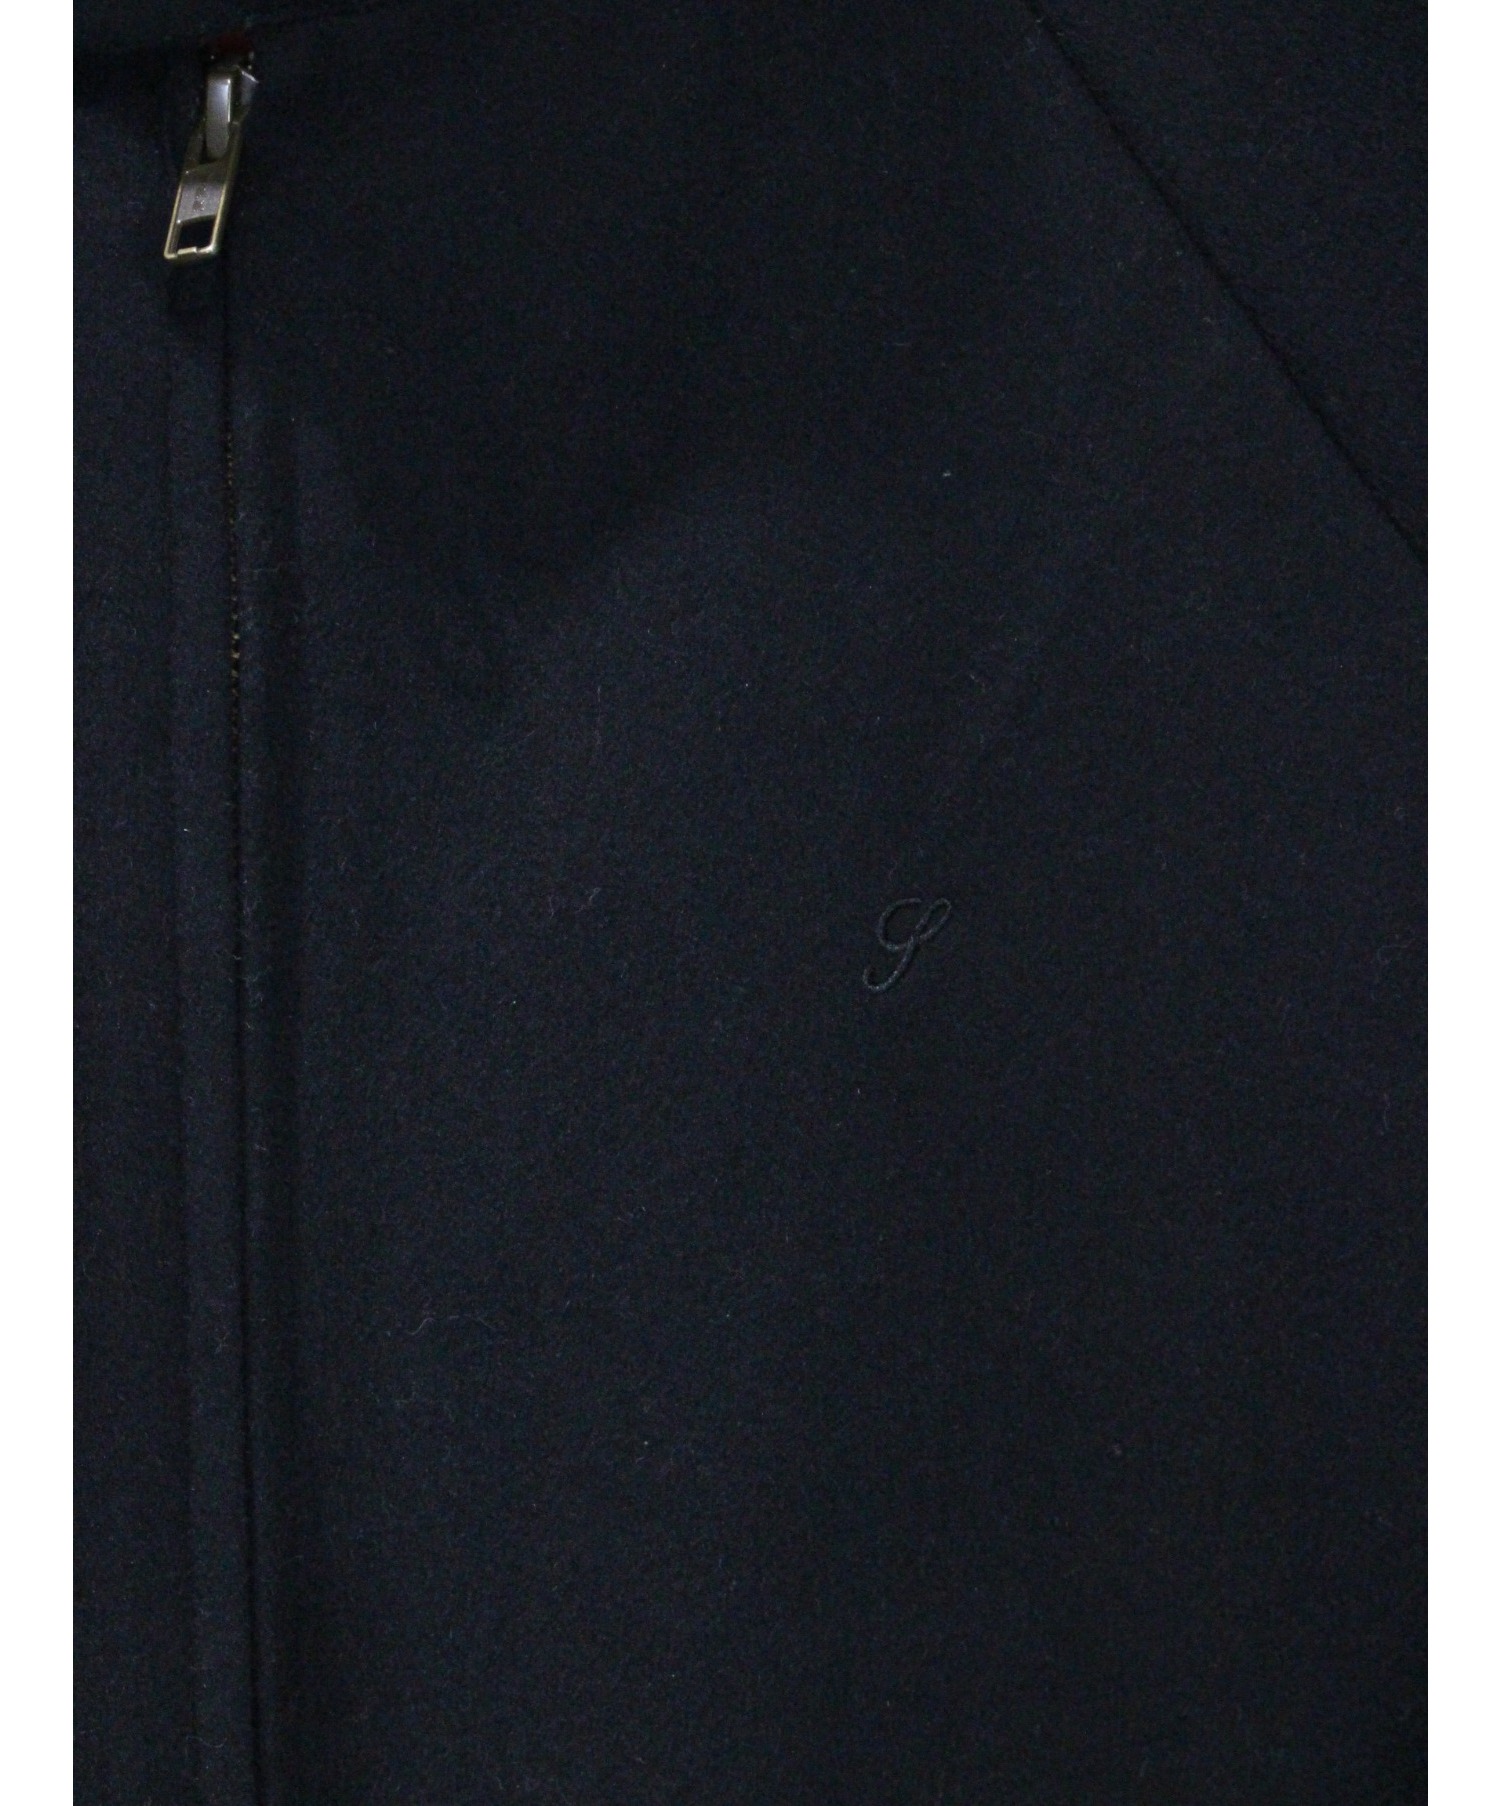 Supreme (シュプリーム) 19AW Wool Harrington Jacket ブラック サイズ:S